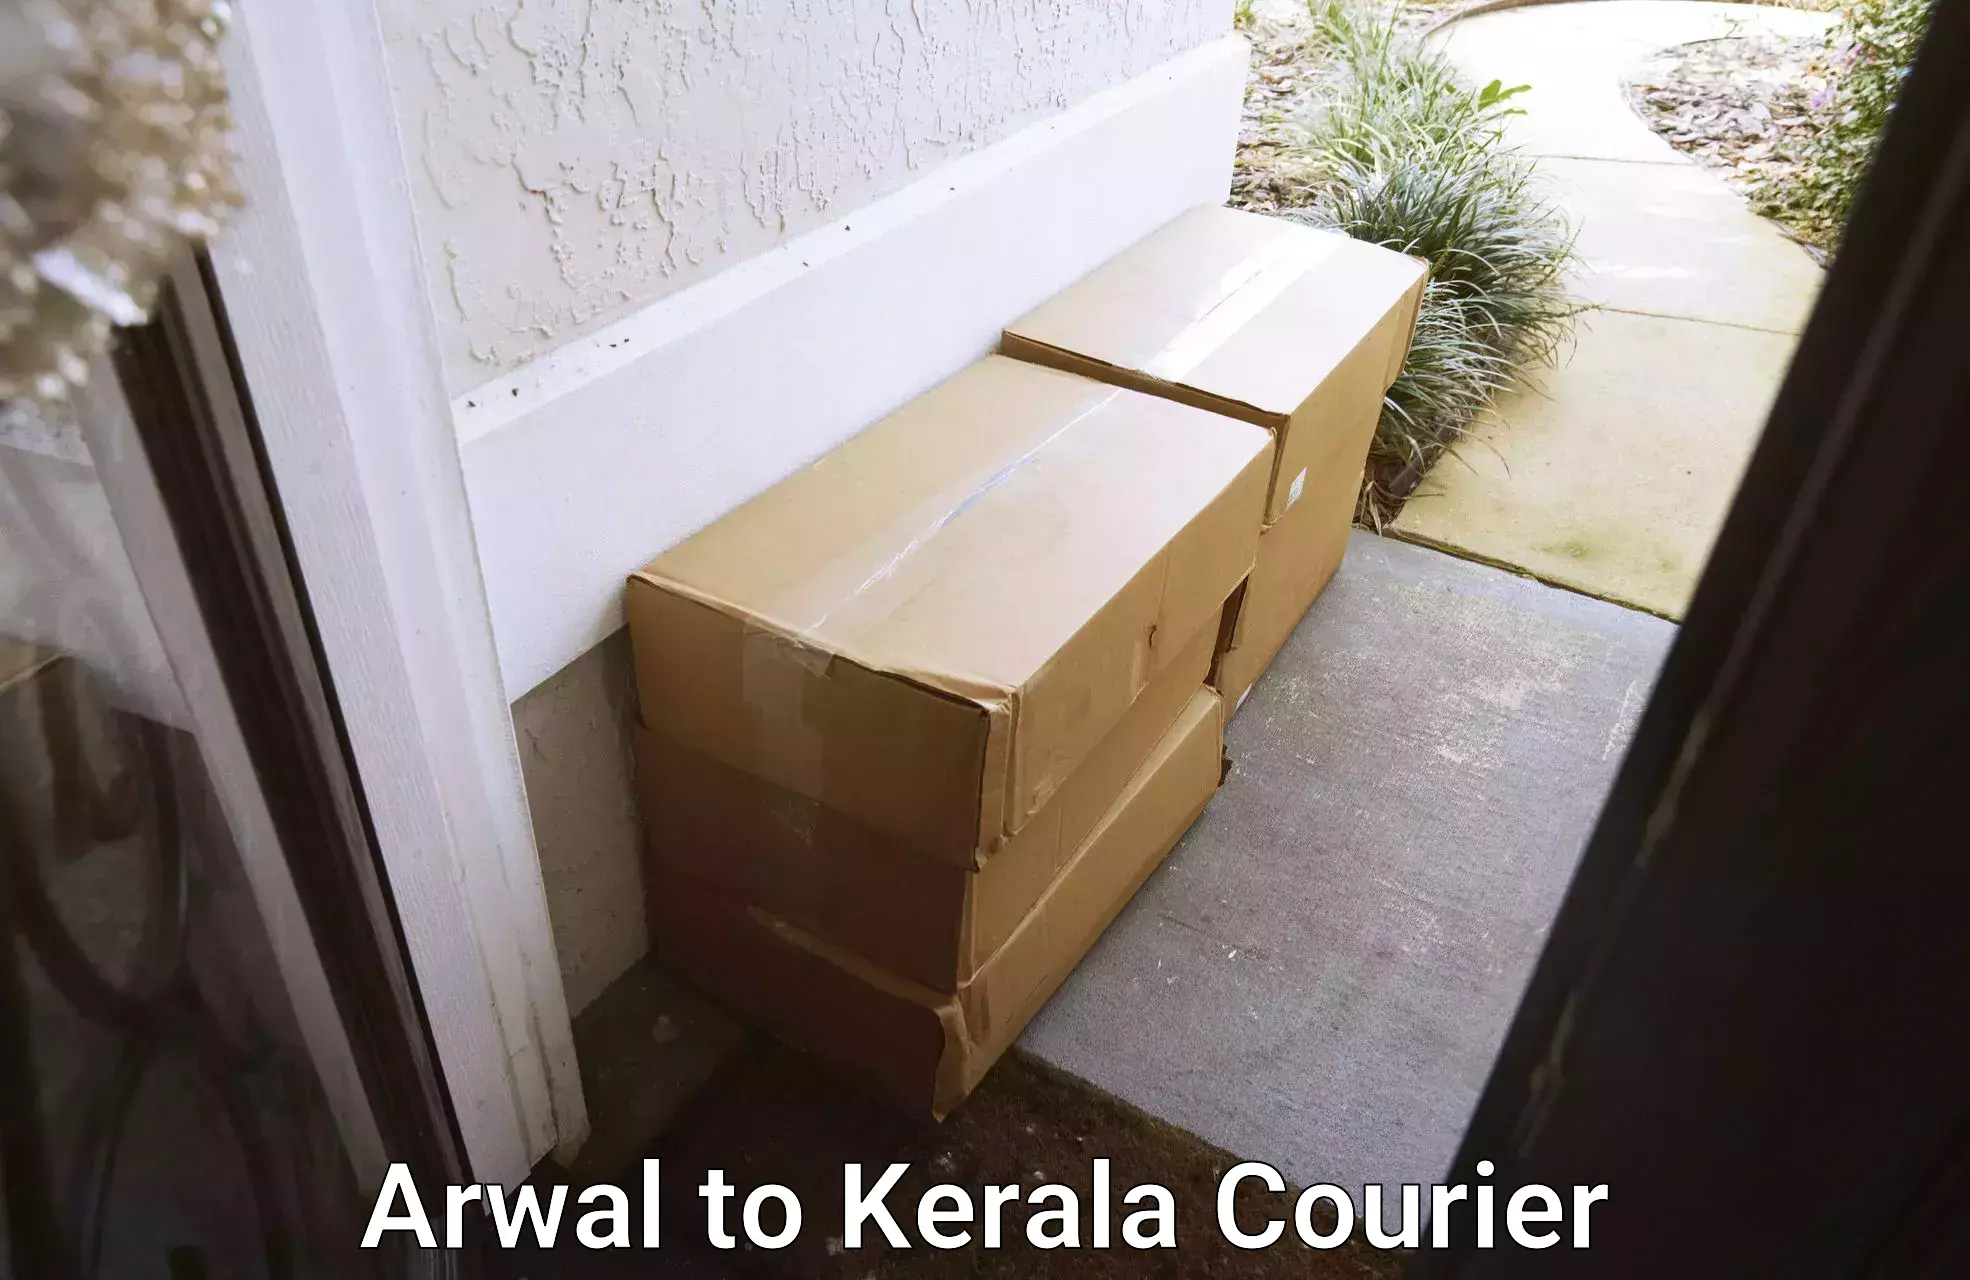 Nationwide furniture transport Arwal to Kerala